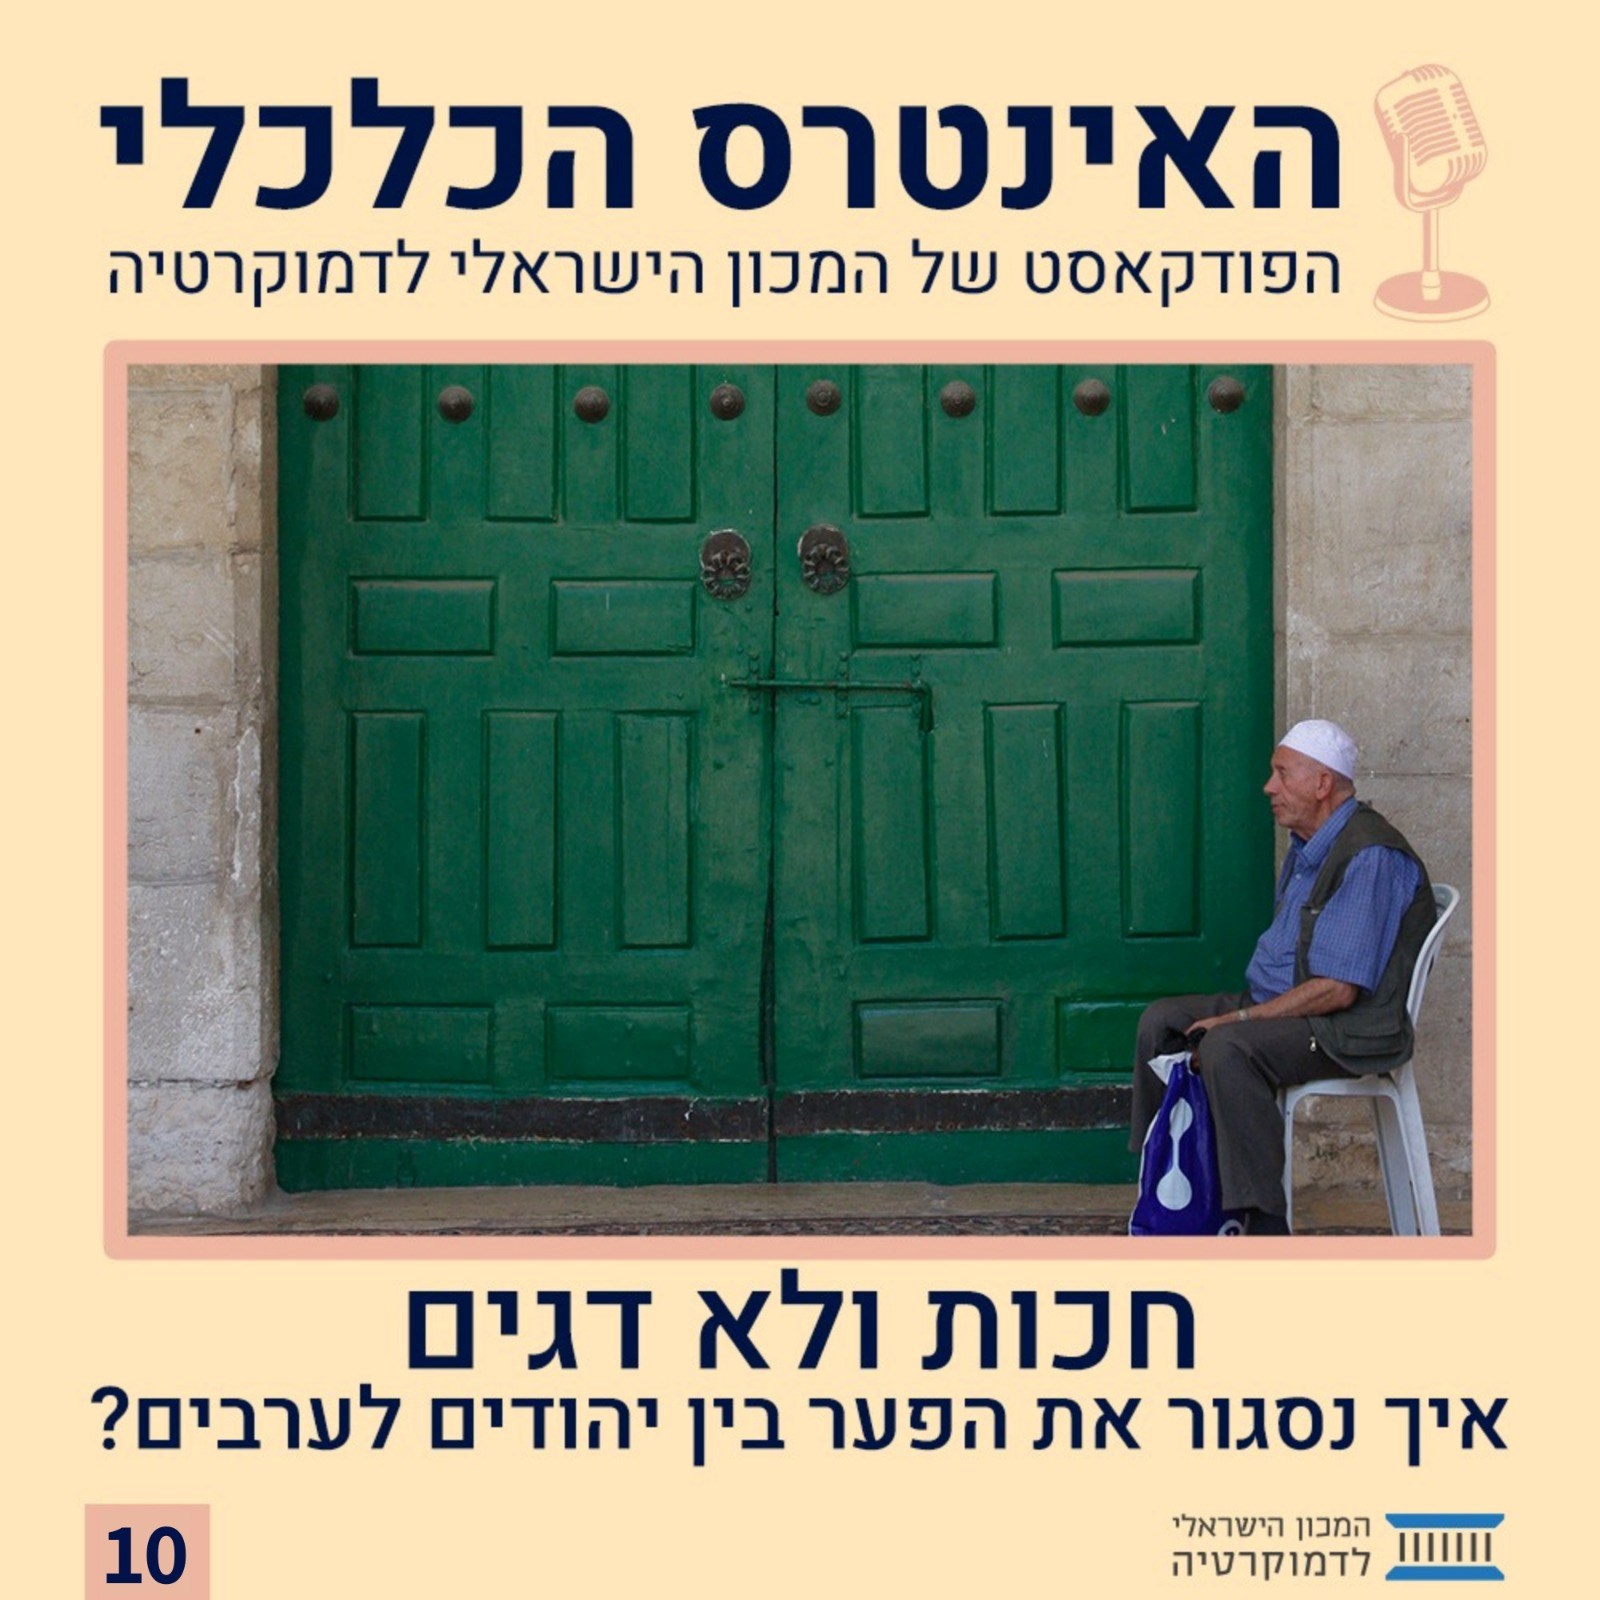 האינטרס הכלכלי | חכות ולא דגים - איך נסגור את הפער בין יהודים לערבים?